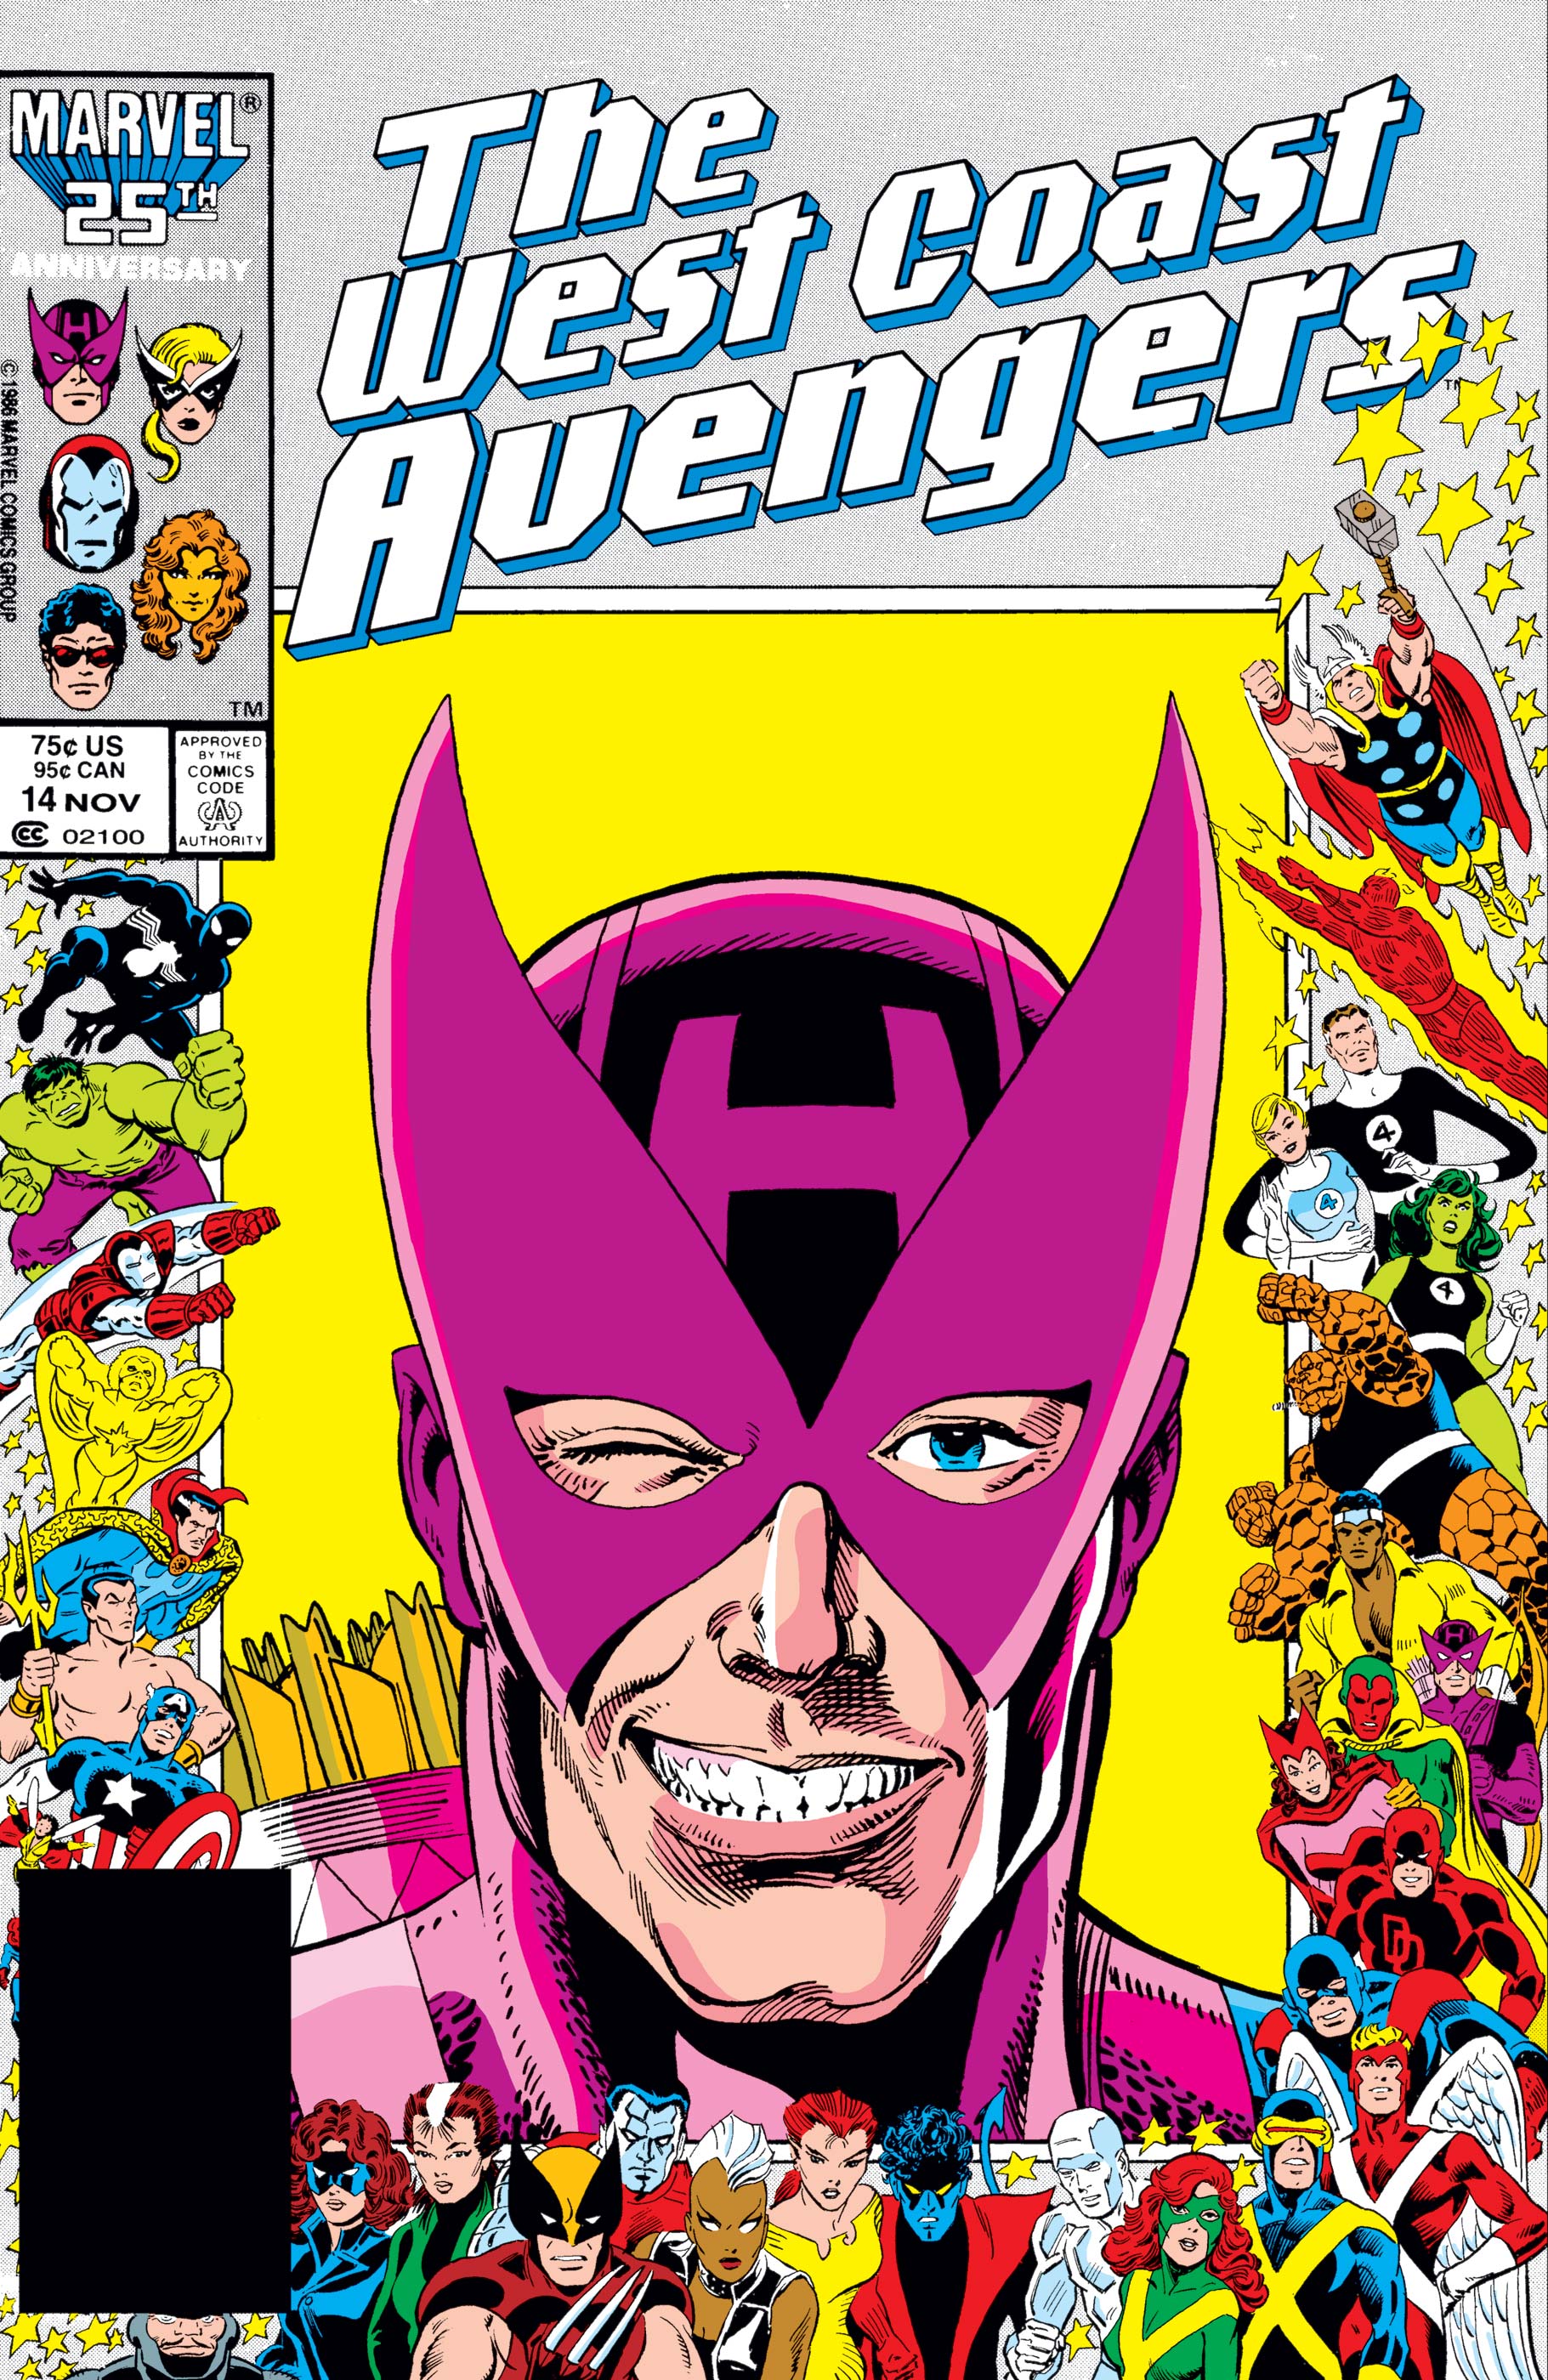 West Coast Avengers (1985) #14